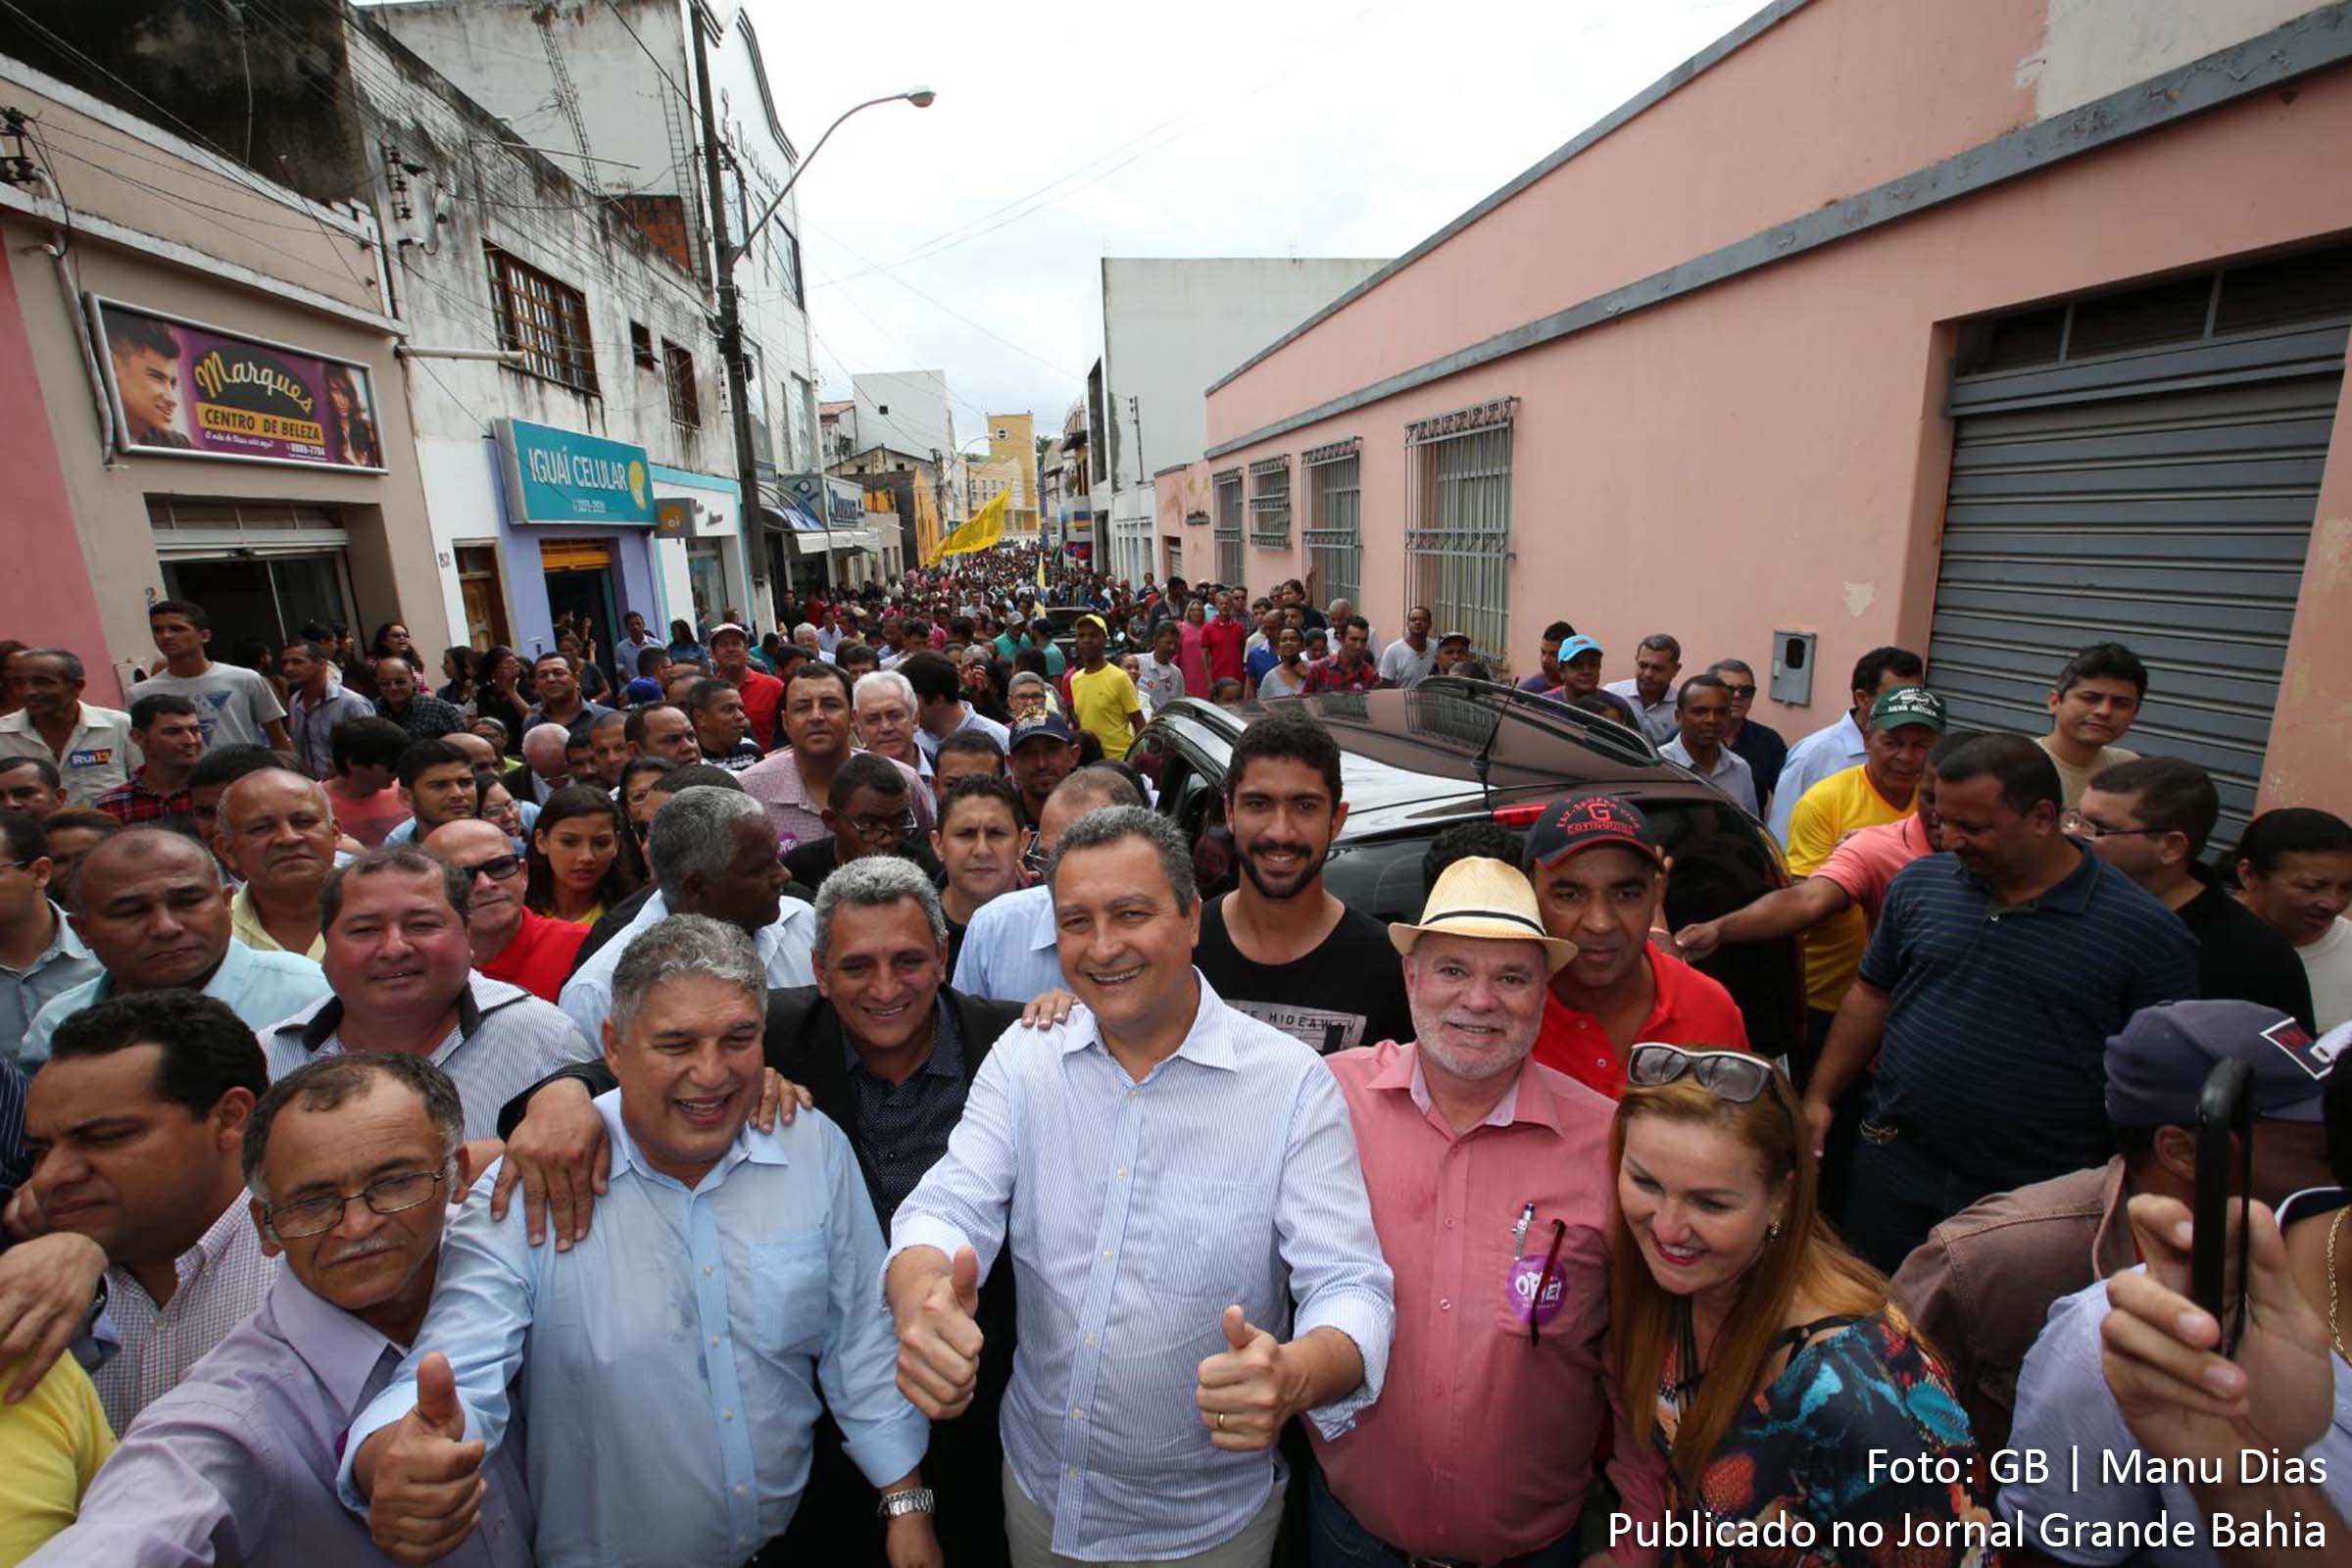 Governador Rui Costa participa de caminhada, ao lado do povo, pelas ruas de Iguaí. Recepção afetiva da comunidade confirma liderança popular do governante.